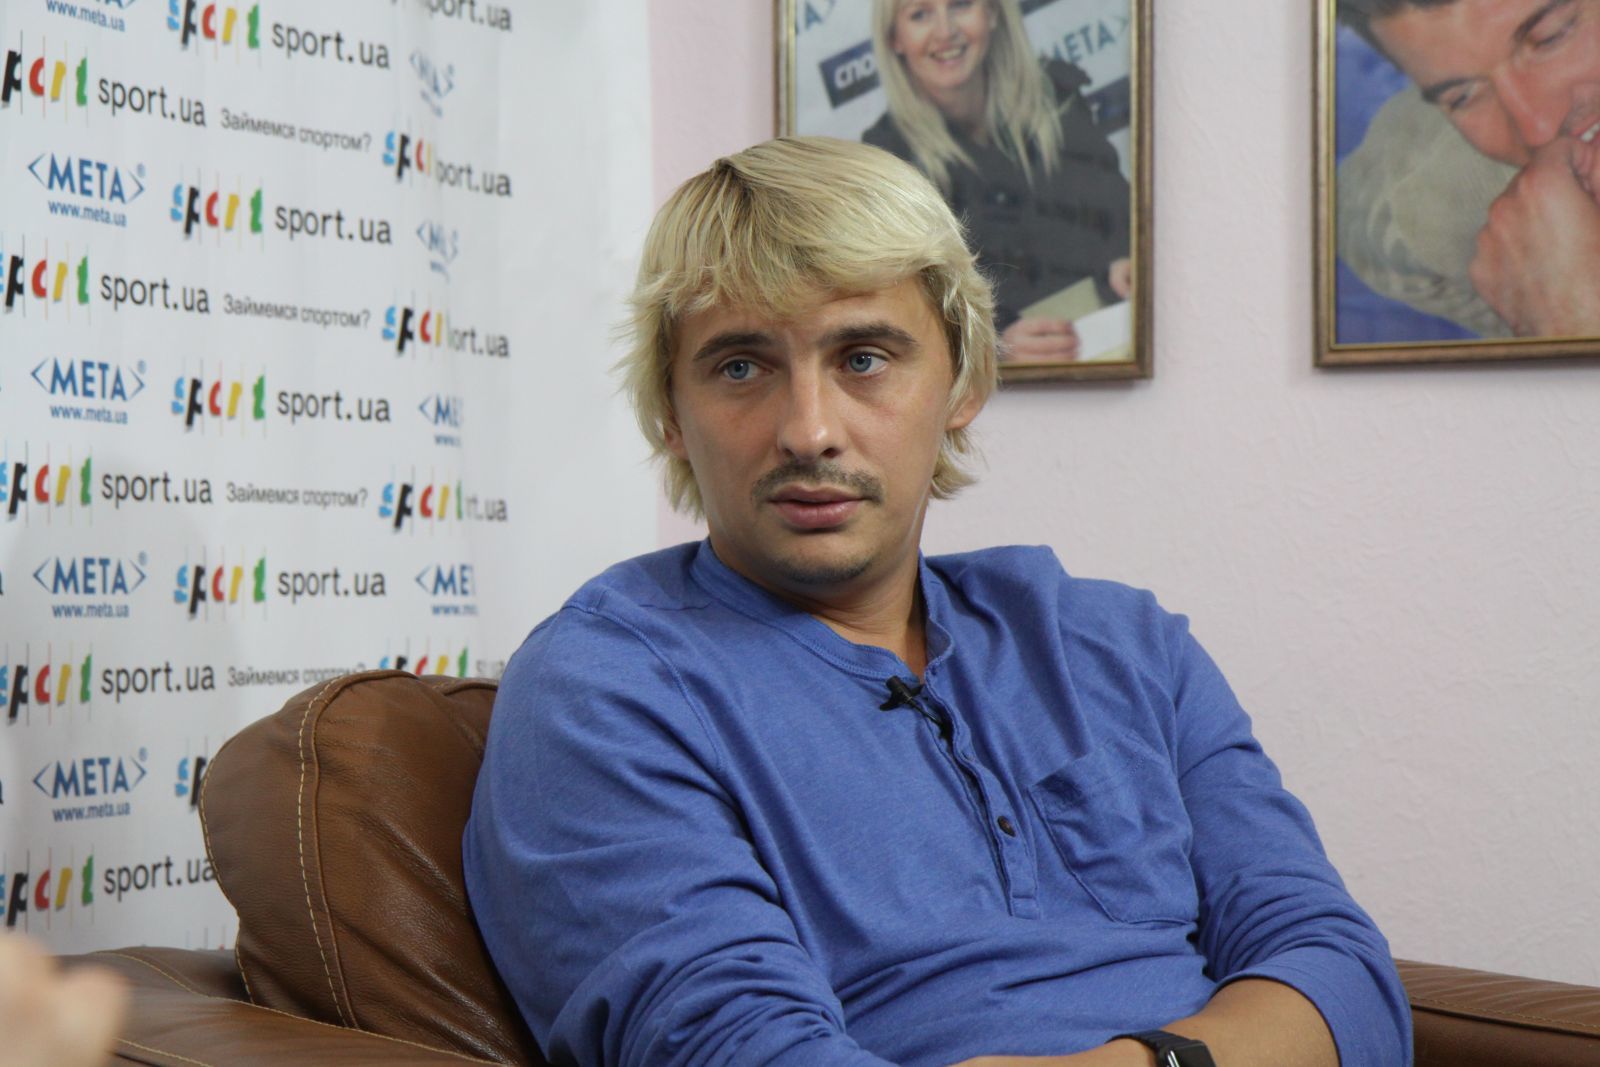 "Было стремновато", - бывший футболист сборной Украины поведал правду об аннексии Крыма 